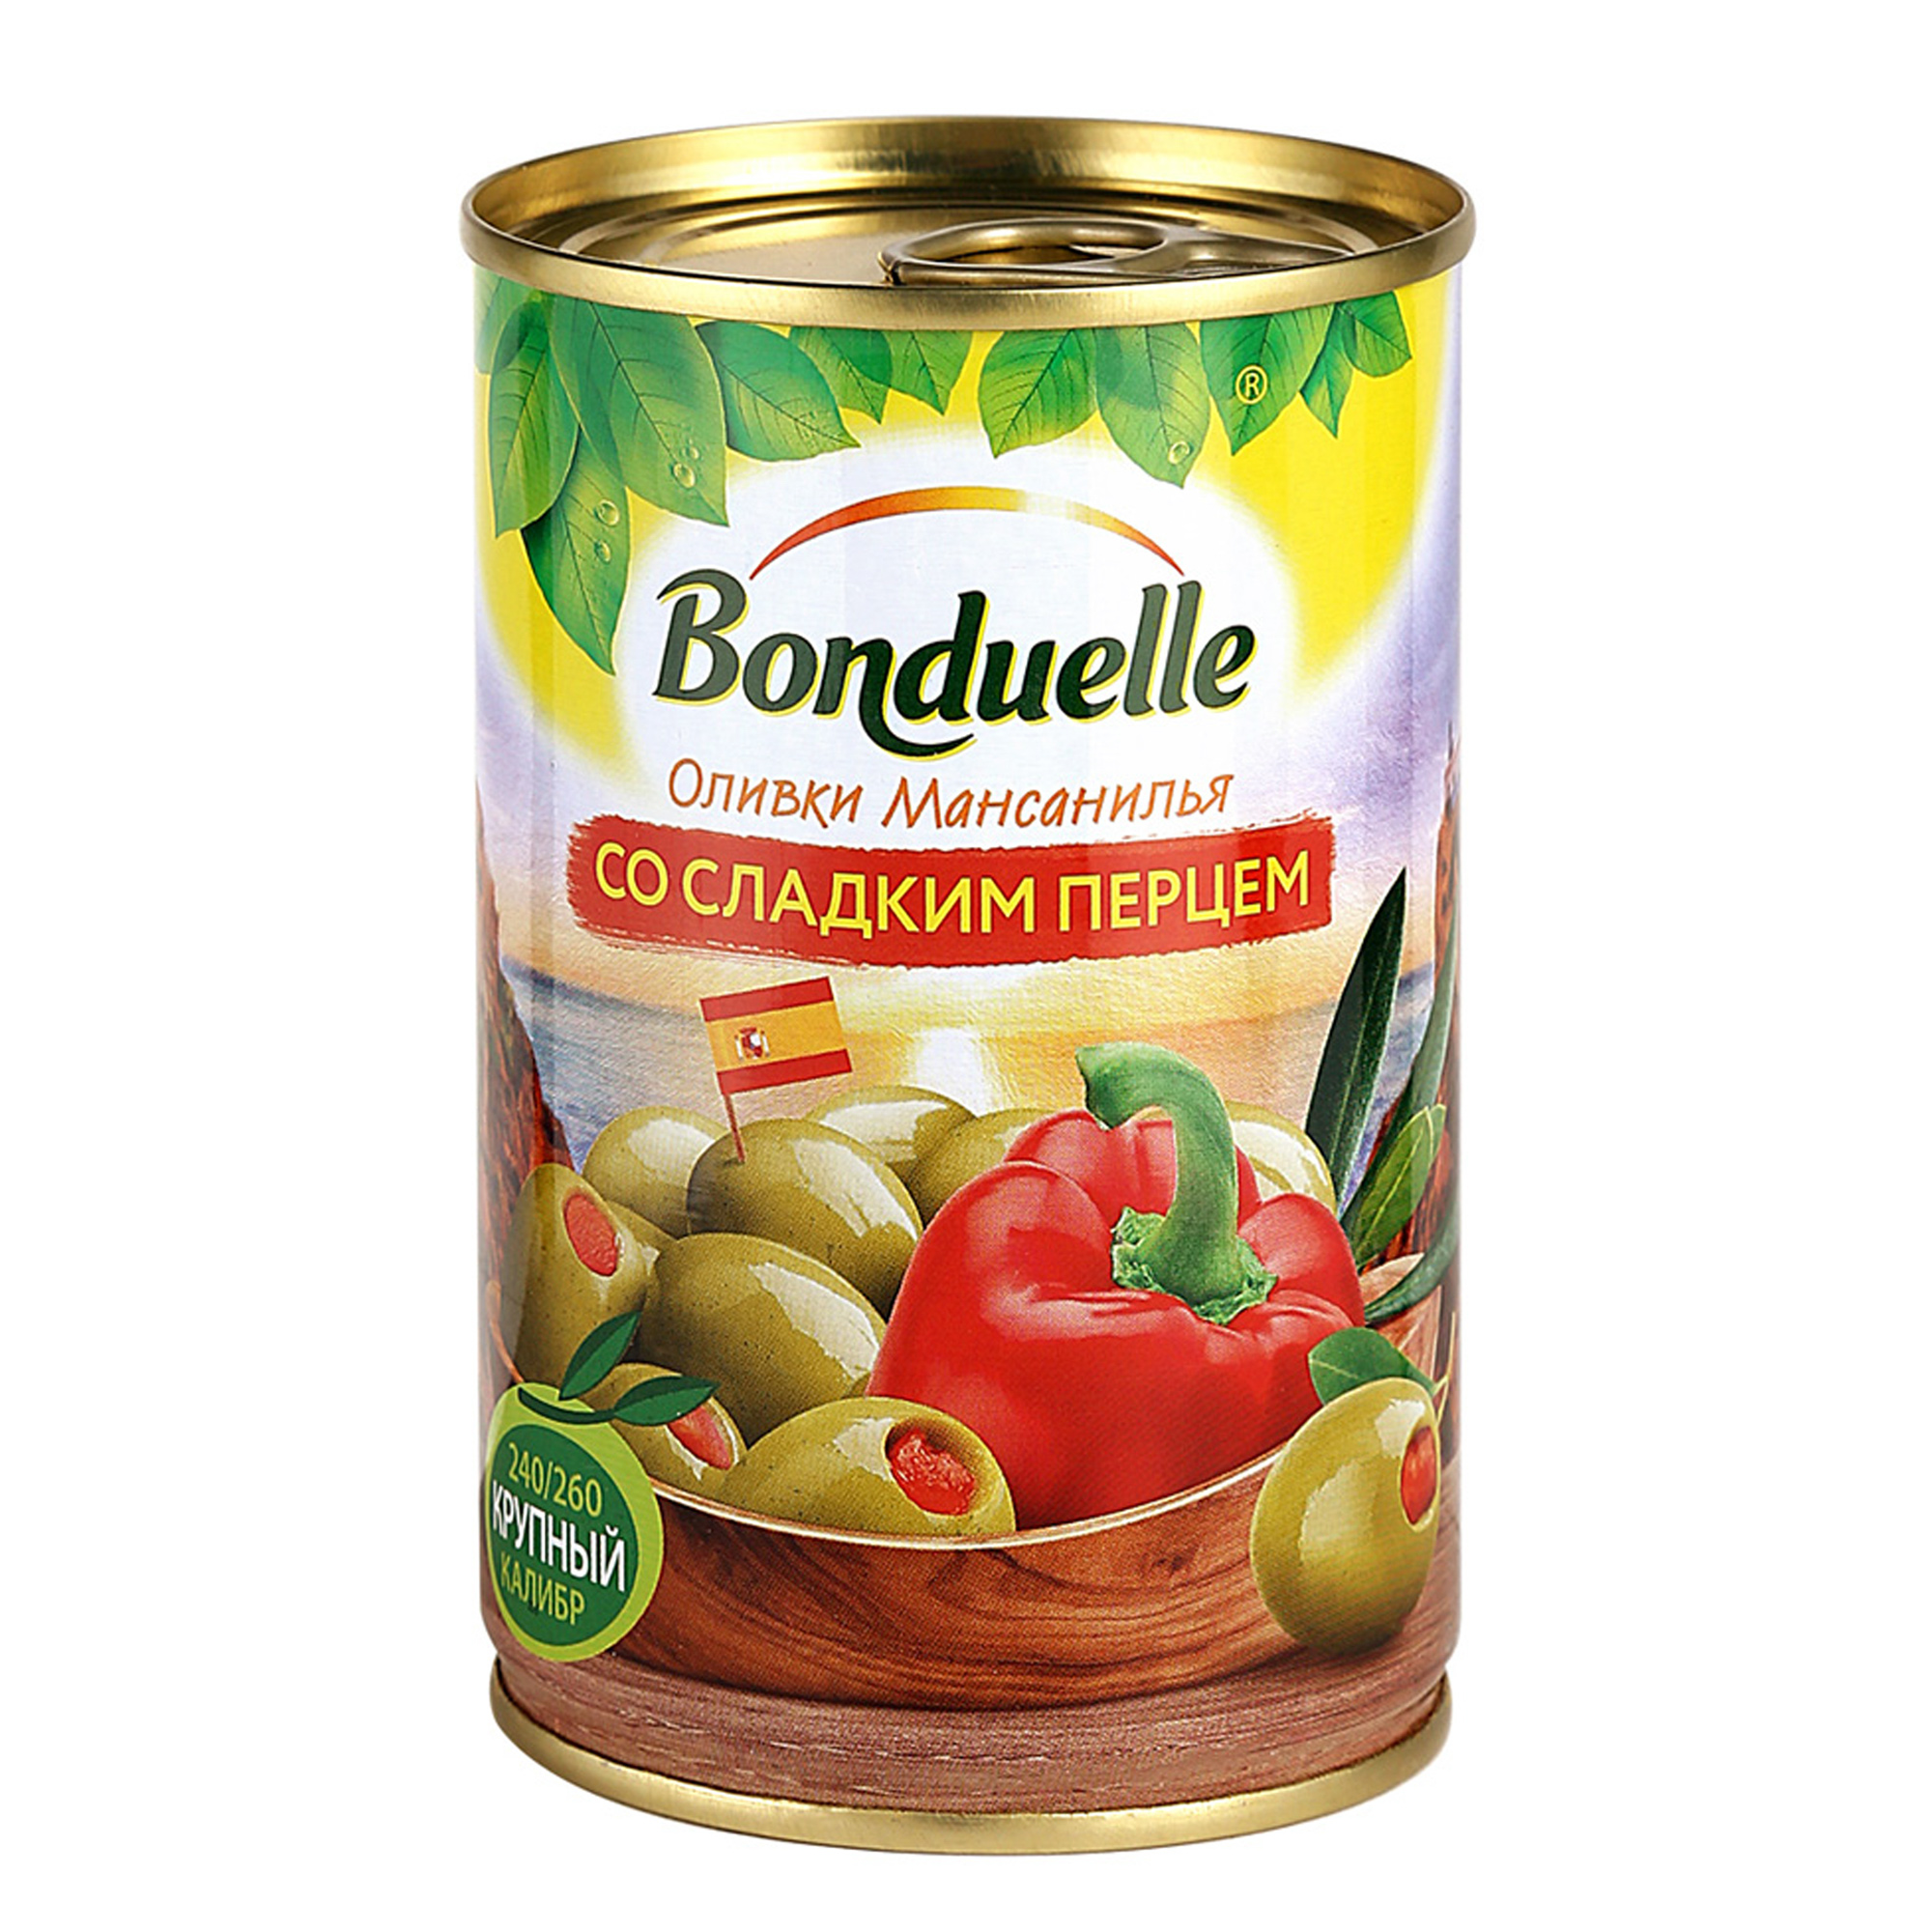 Оливки Bonduelle со сладким перцем 314 г оливки bonduelle со сладким перцем 314 г